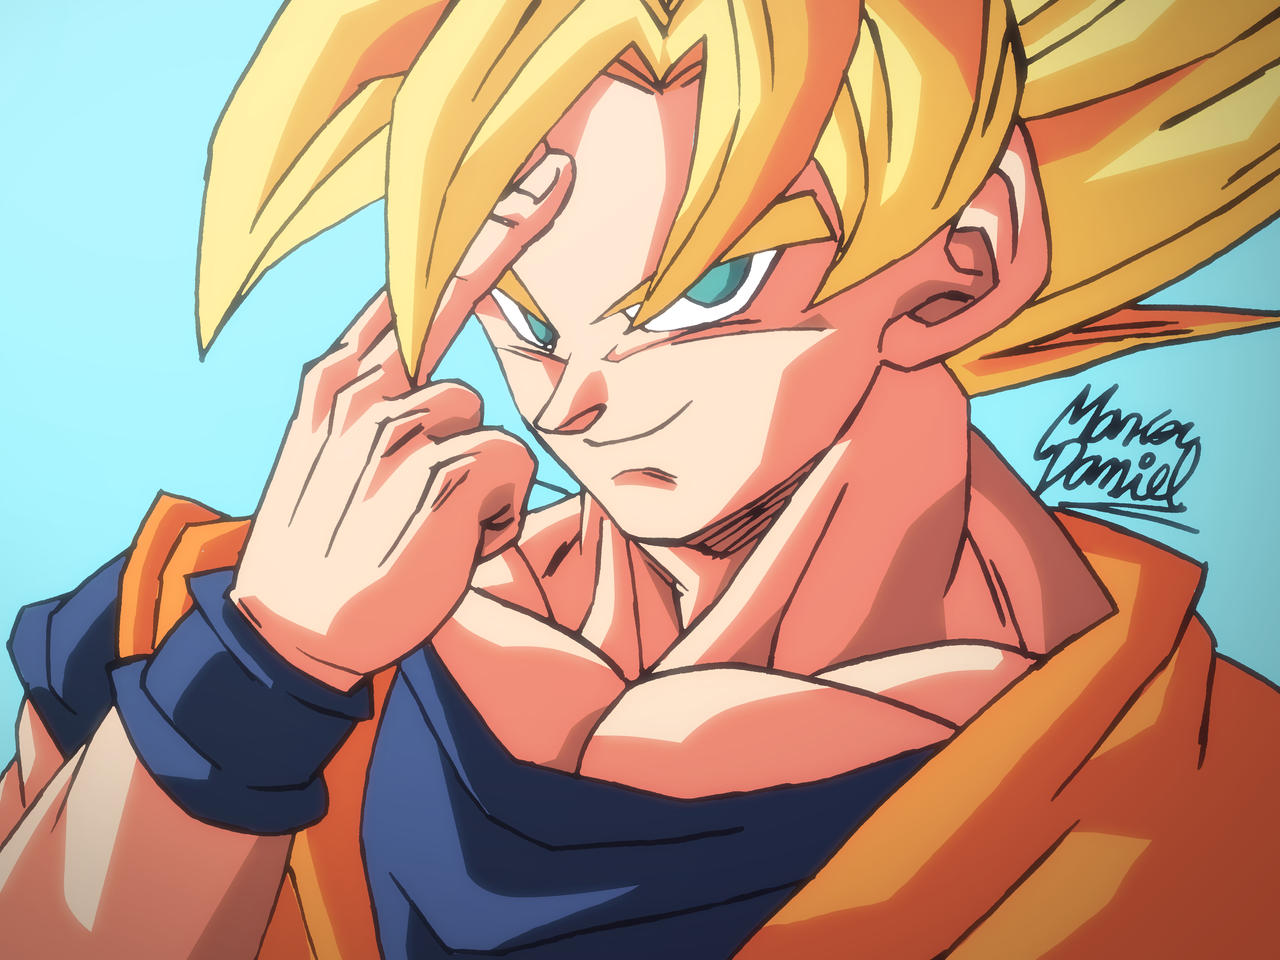 Dibujo de Goku SSJ 19 de mayo de 2021 by DanielArts98 on DeviantArt